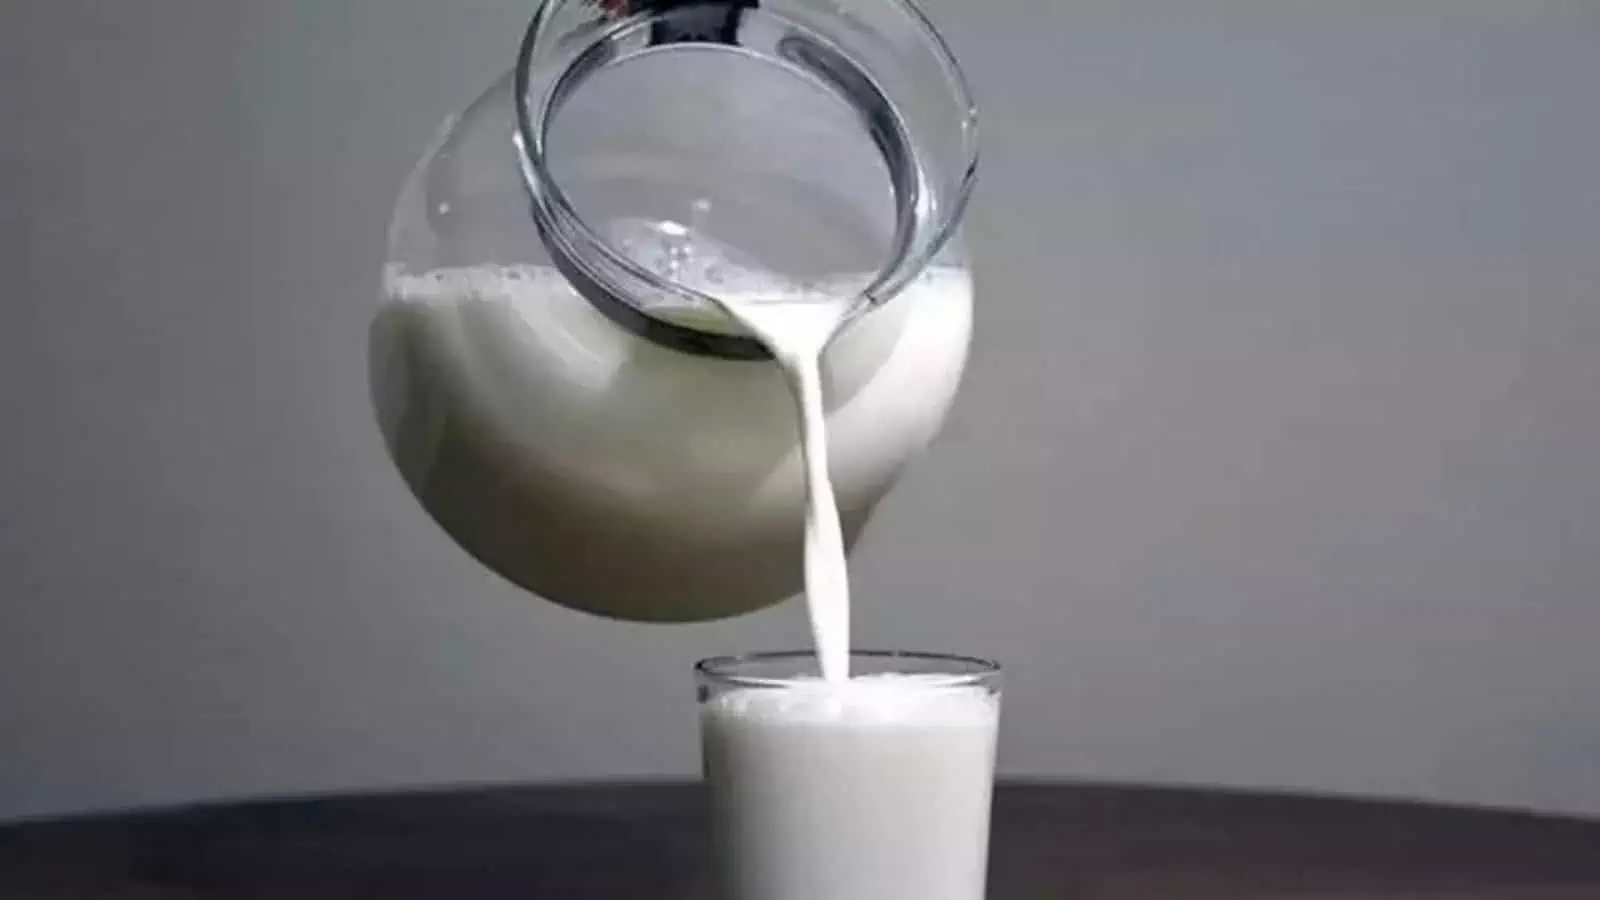 antalya halk süt yardım başvurusu